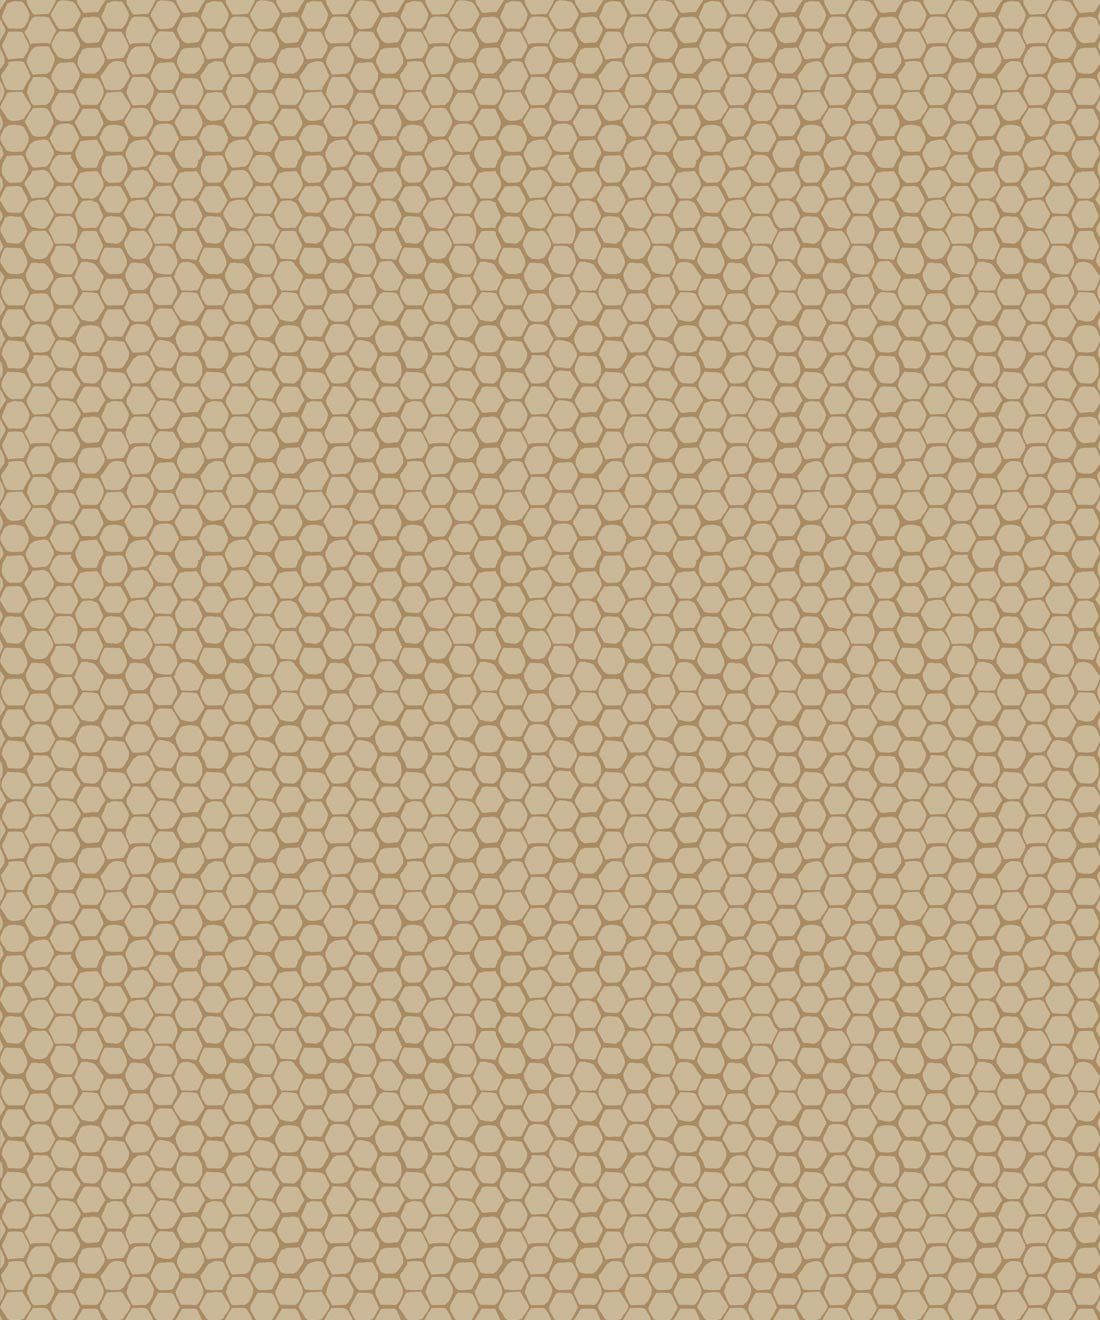 Honeycomb Geo Wallpaper • Hackney & Co. • Honey • Swatch